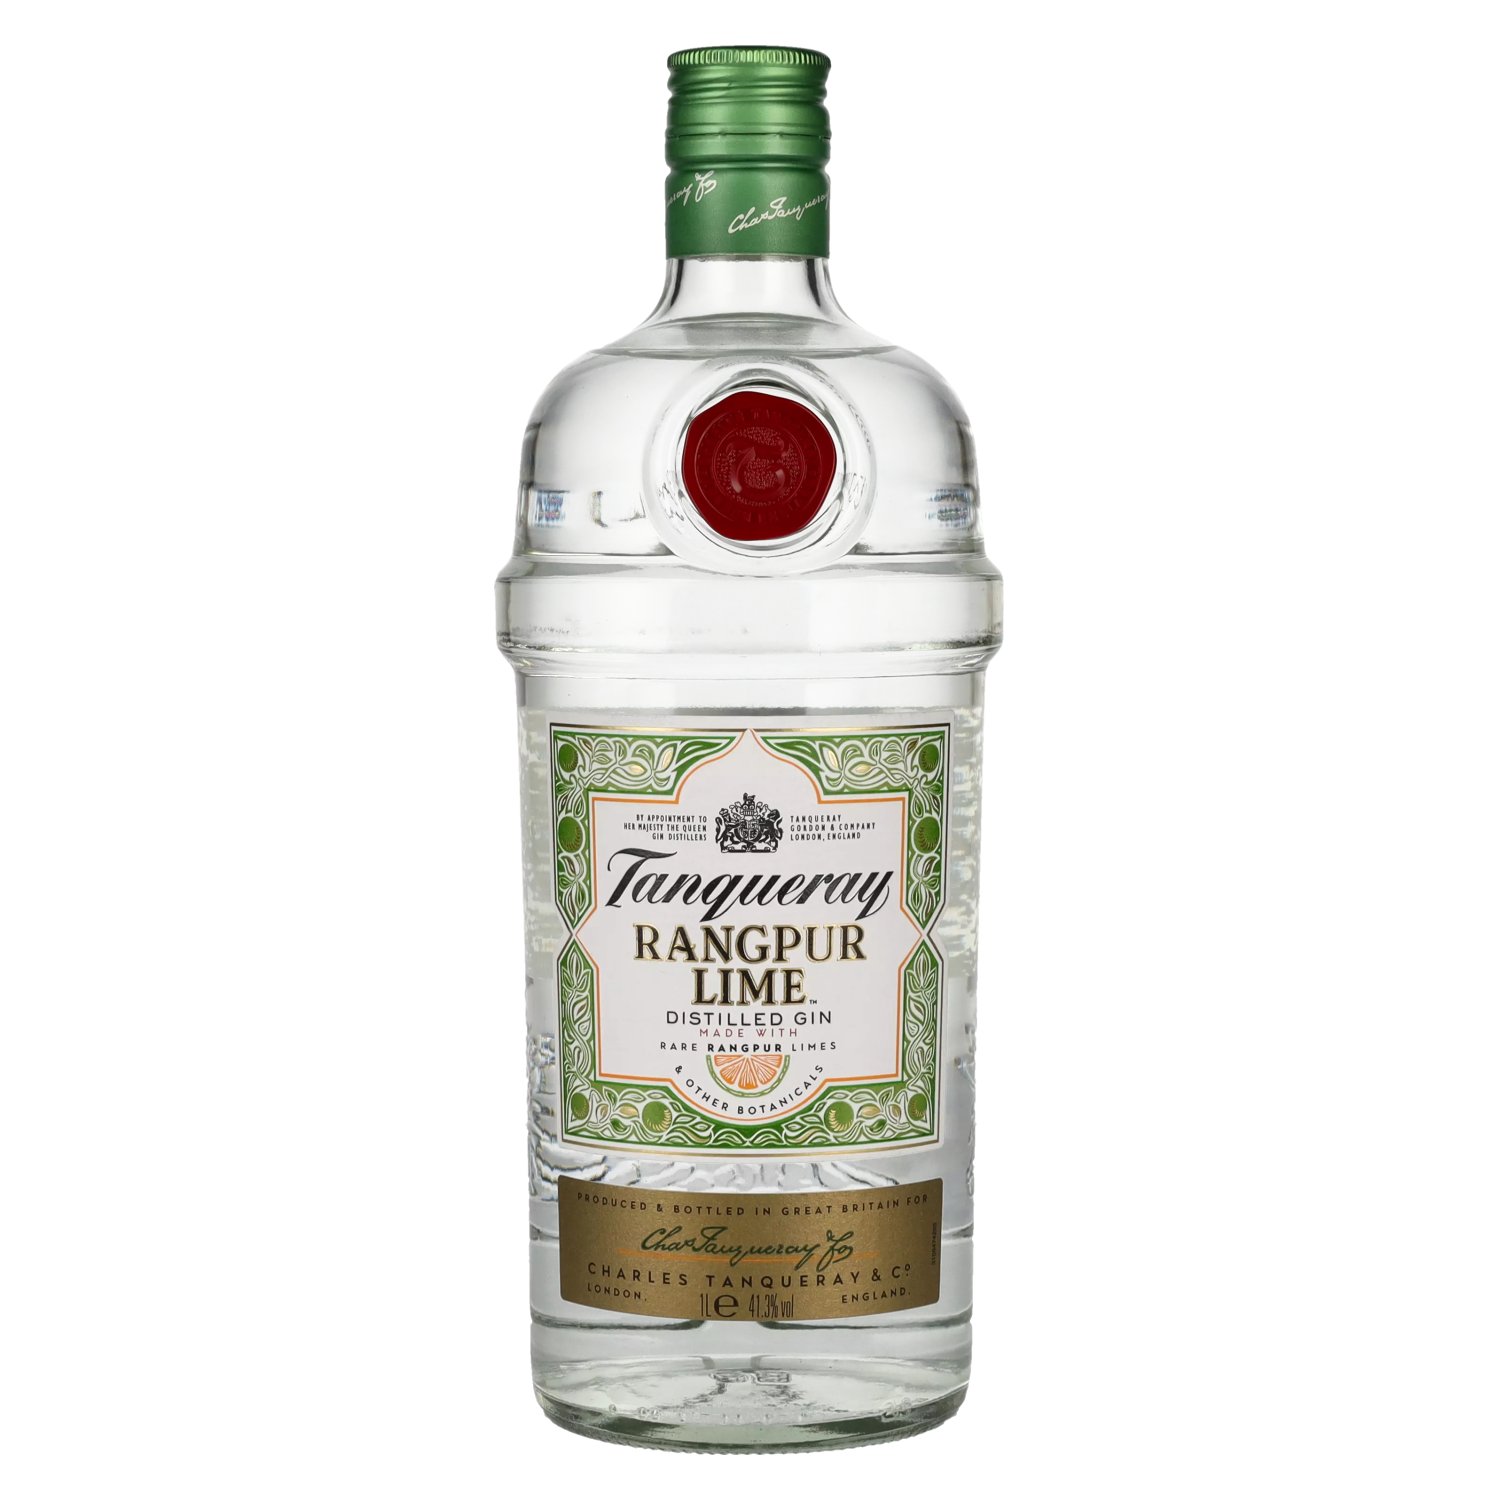 RANGPUR Tanqueray 41,3% Distilled Vol. LIME 1l Gin